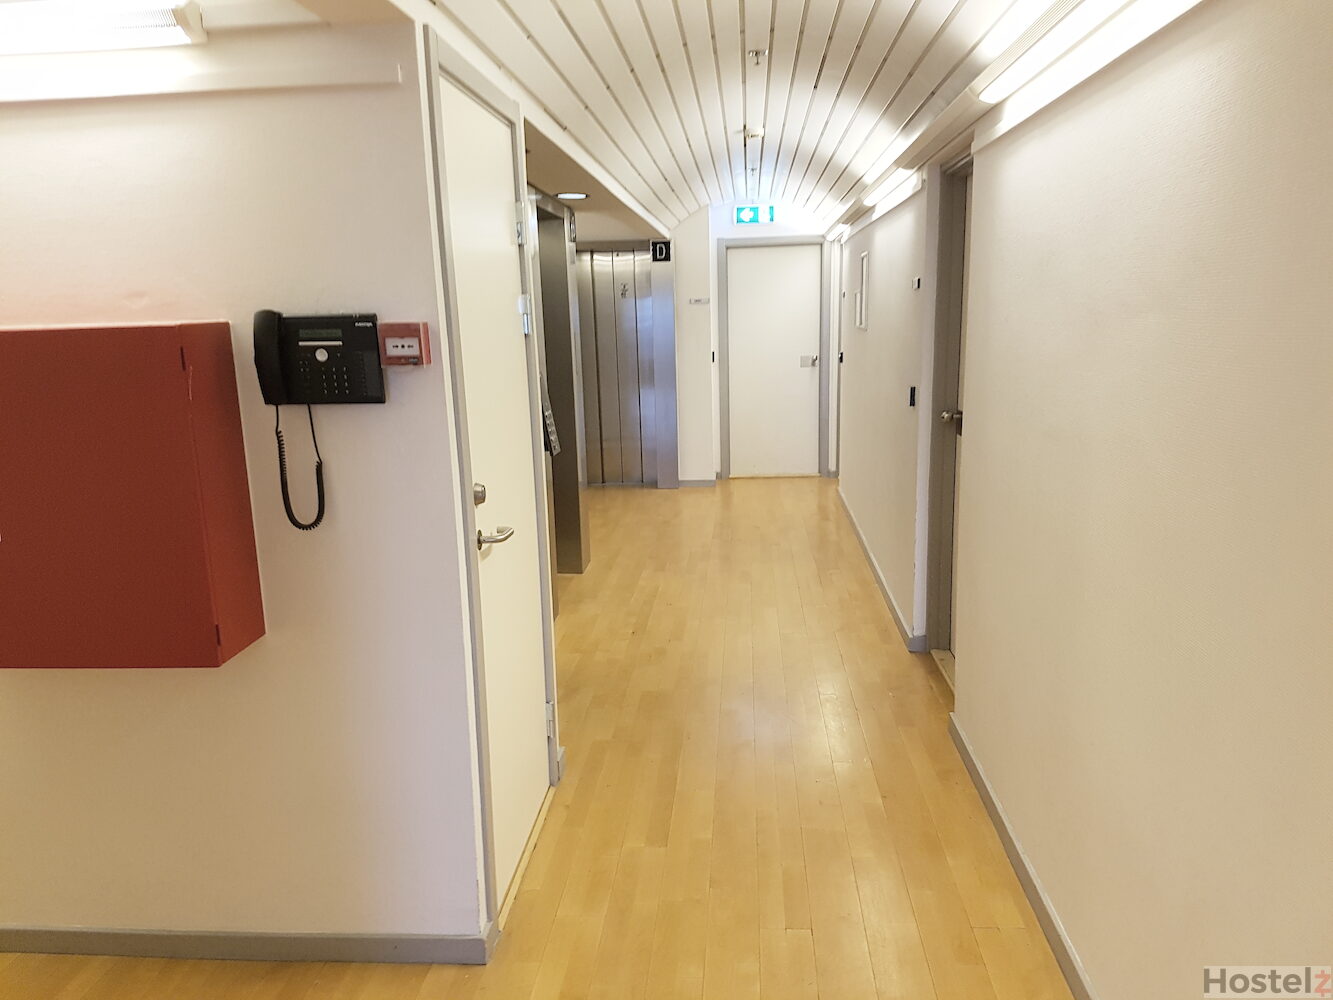 hallway to rooms